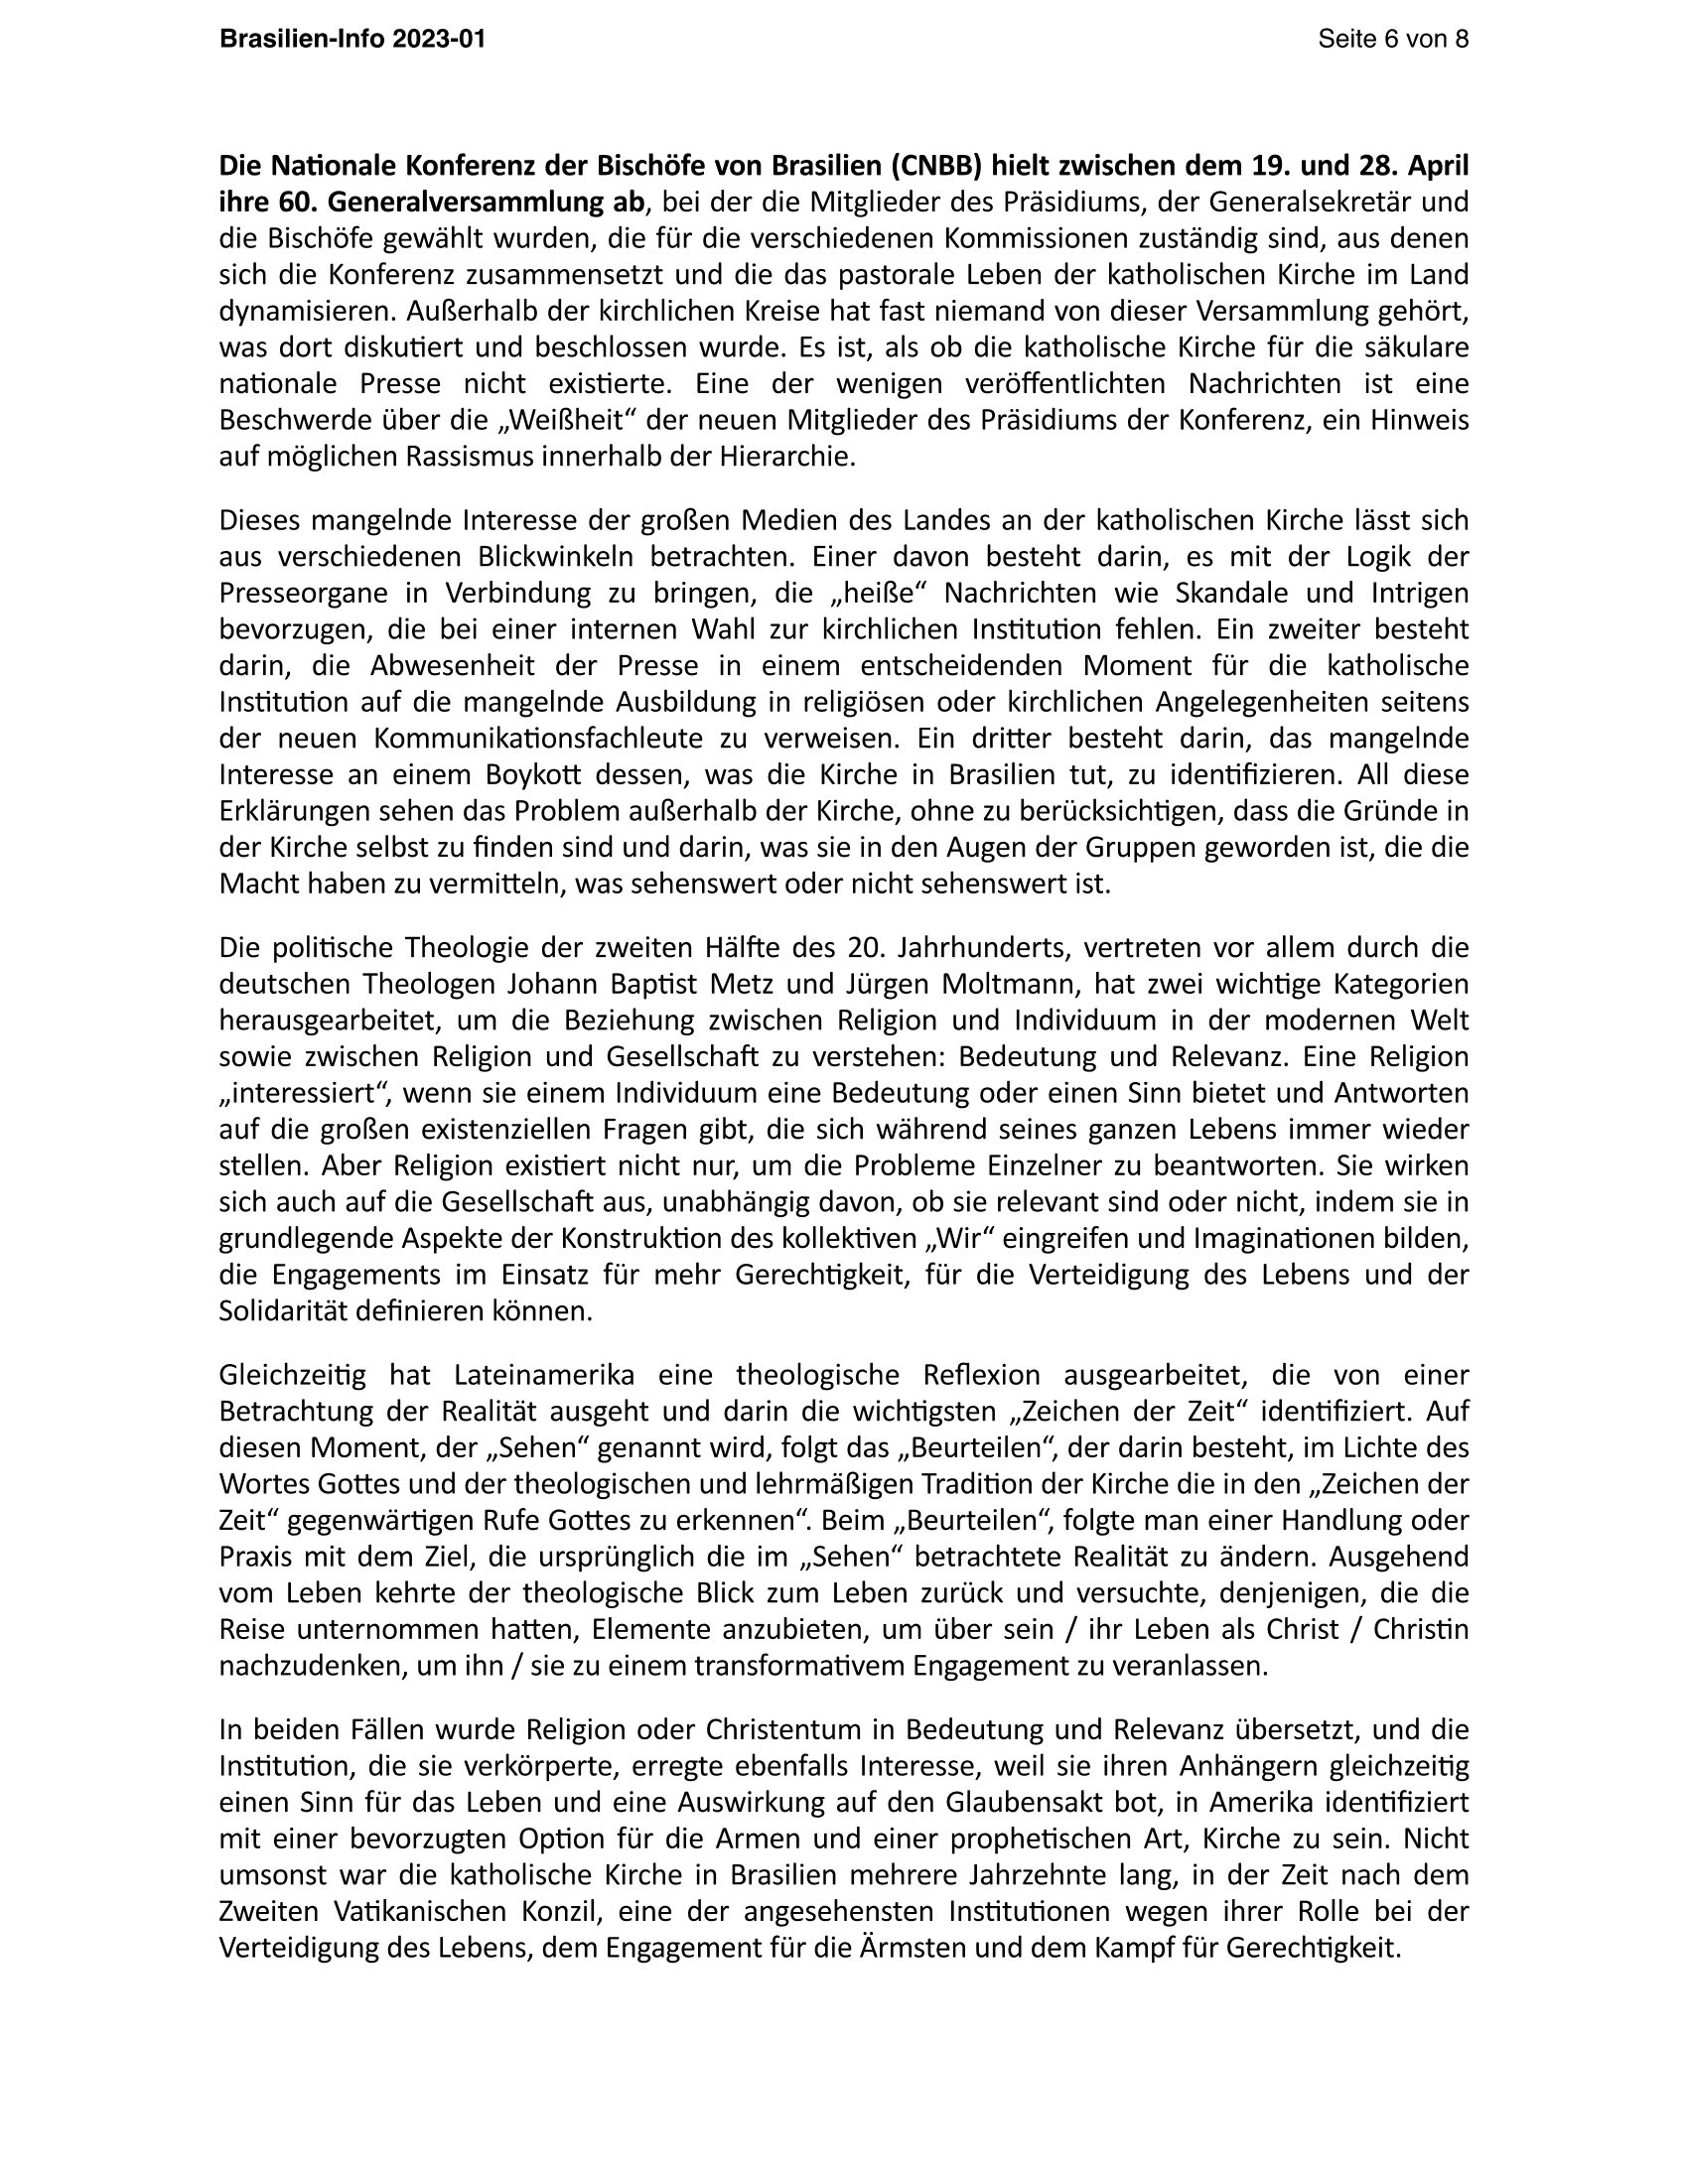 Brasilien Info 02 2023 Page 6